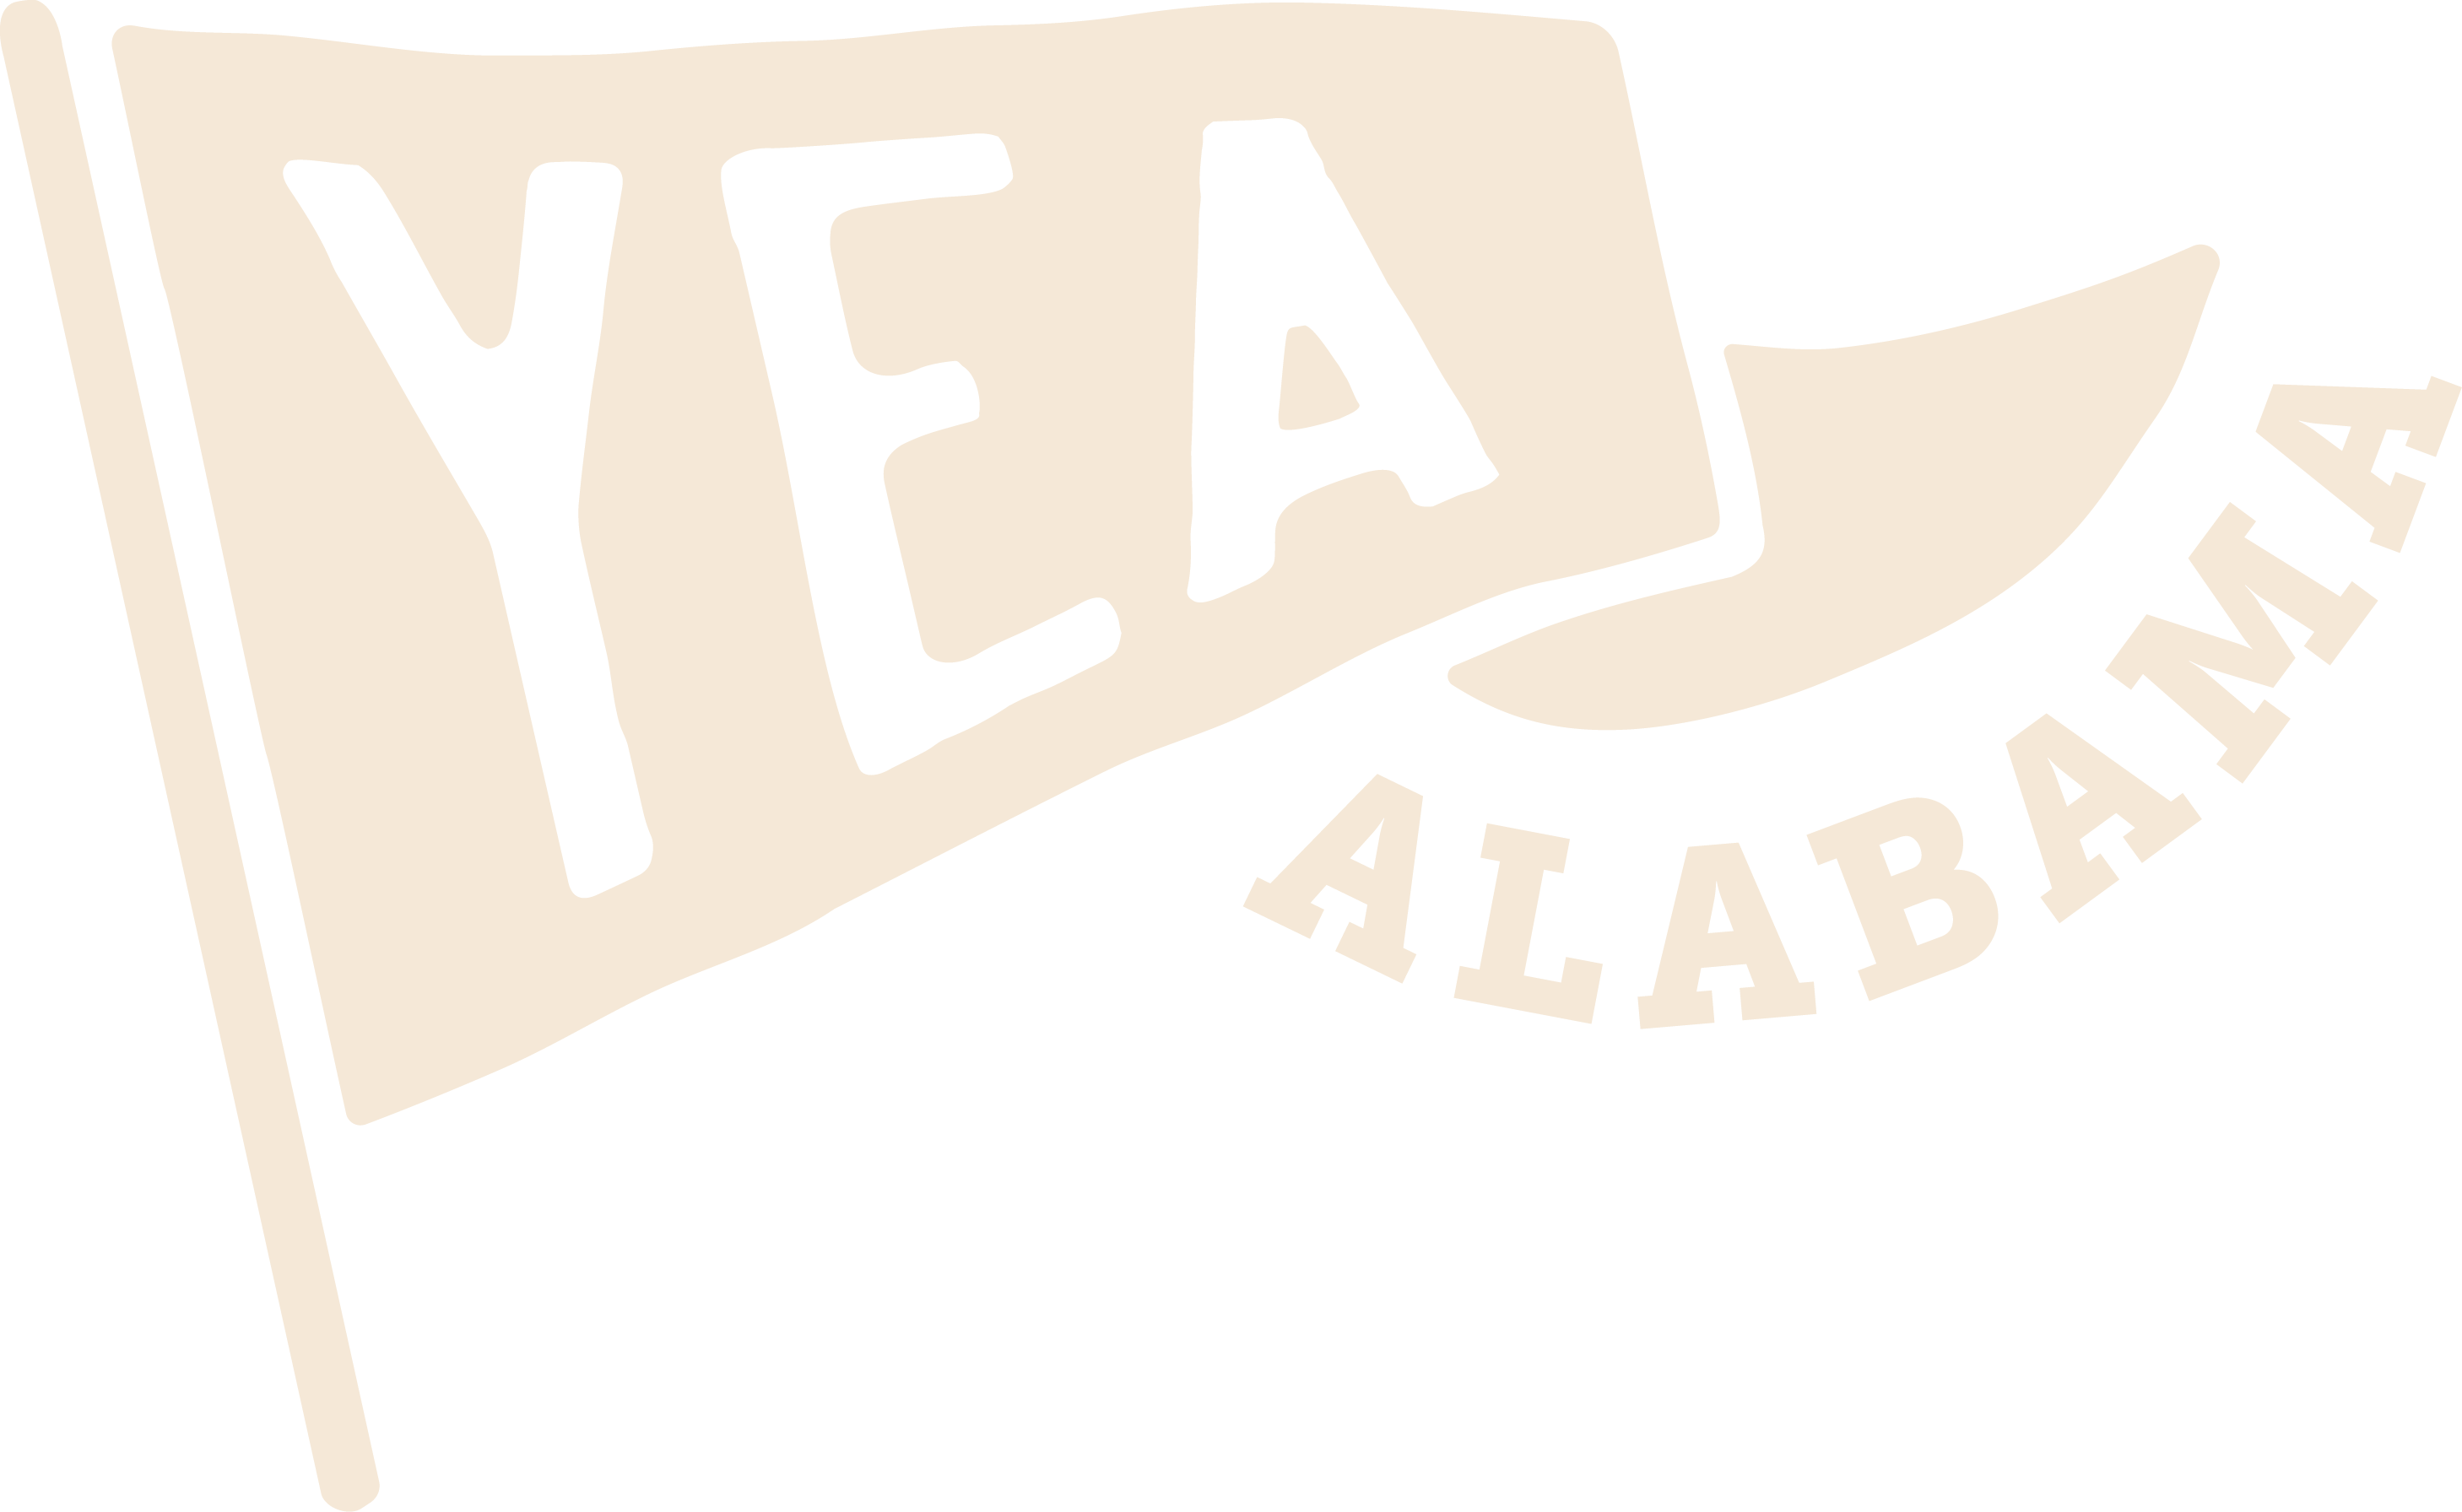 Yea Alabama